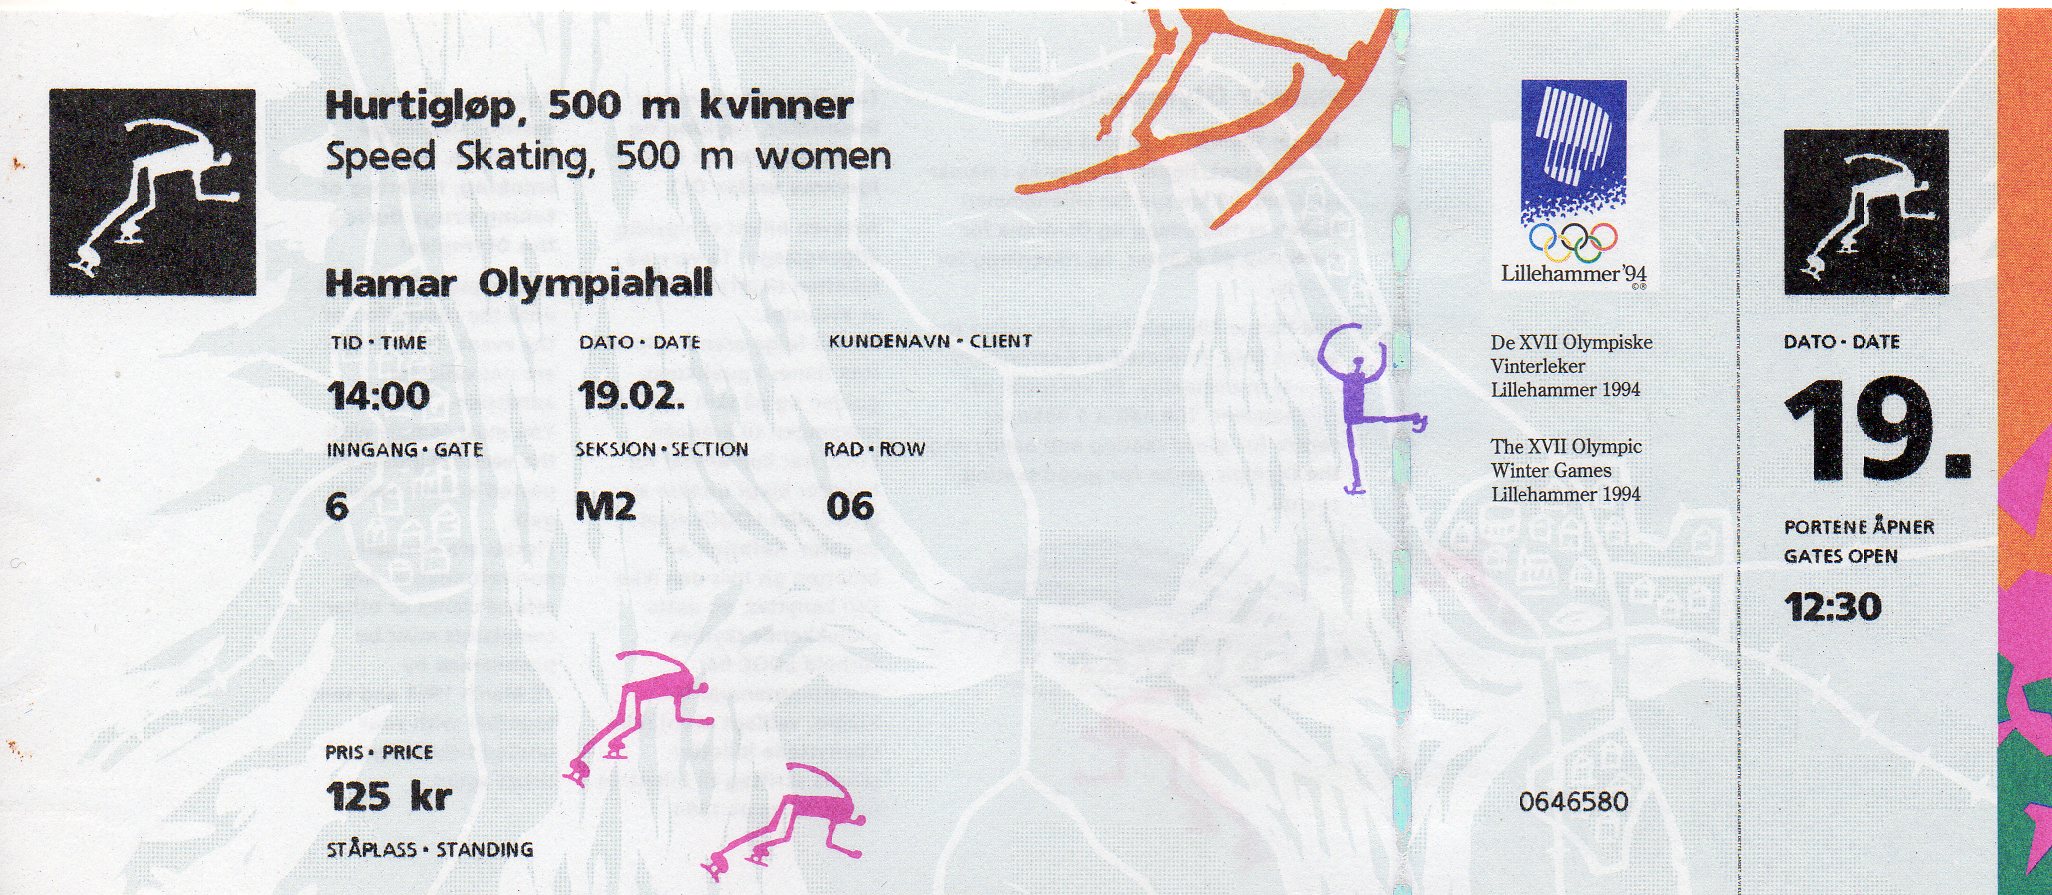 Billetter - Hurtigløp 500 m kvinner Hamar